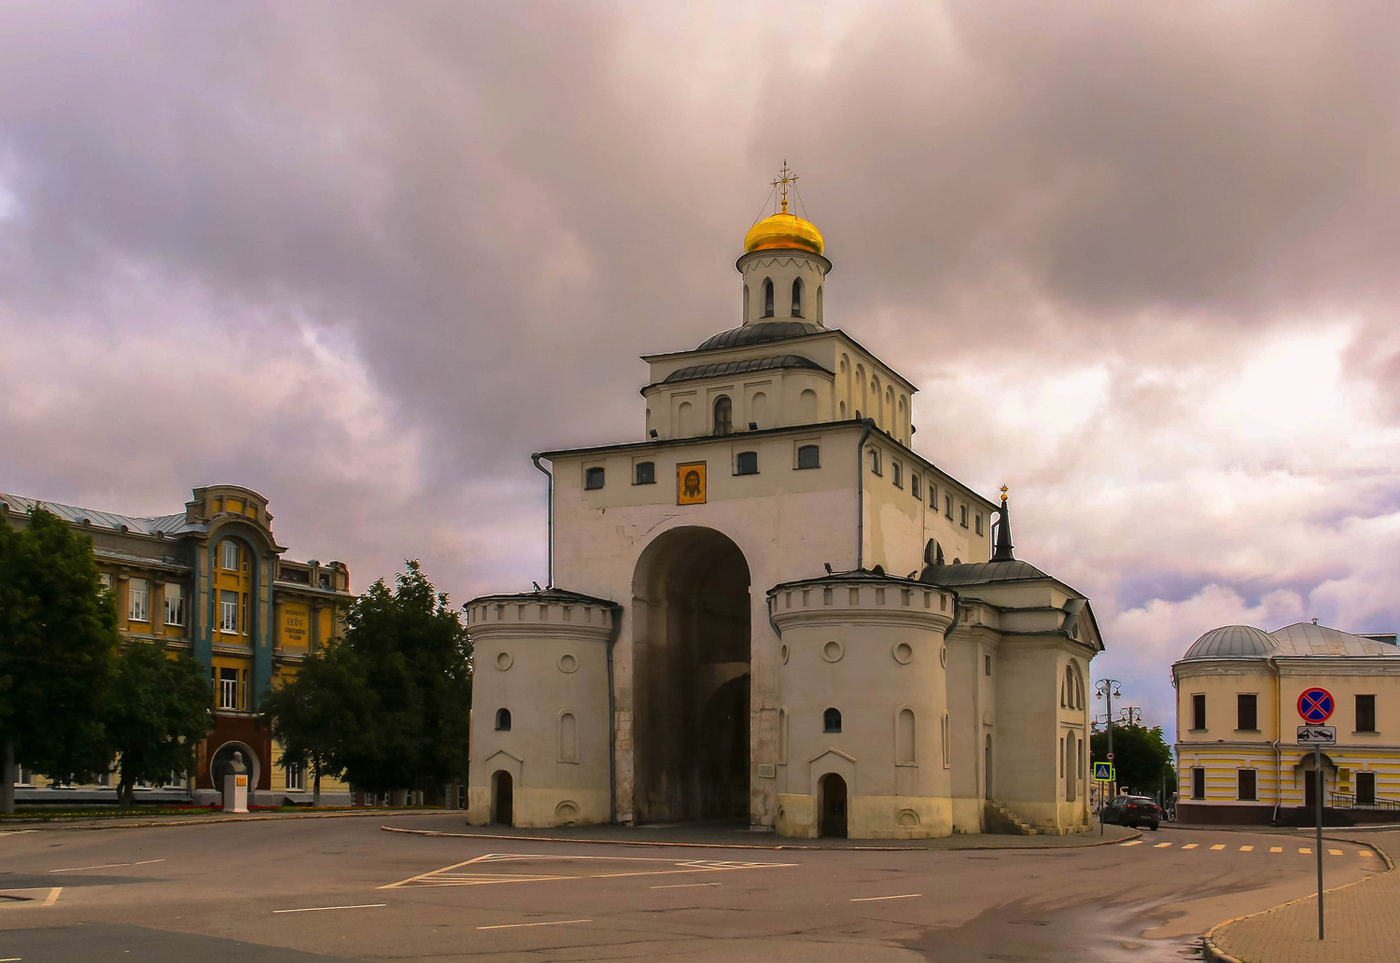 Церковь золотые ворота во владимире. Золотые ворота во Владимире 12 век. Золотые ворота во Владимире 1158-1164.